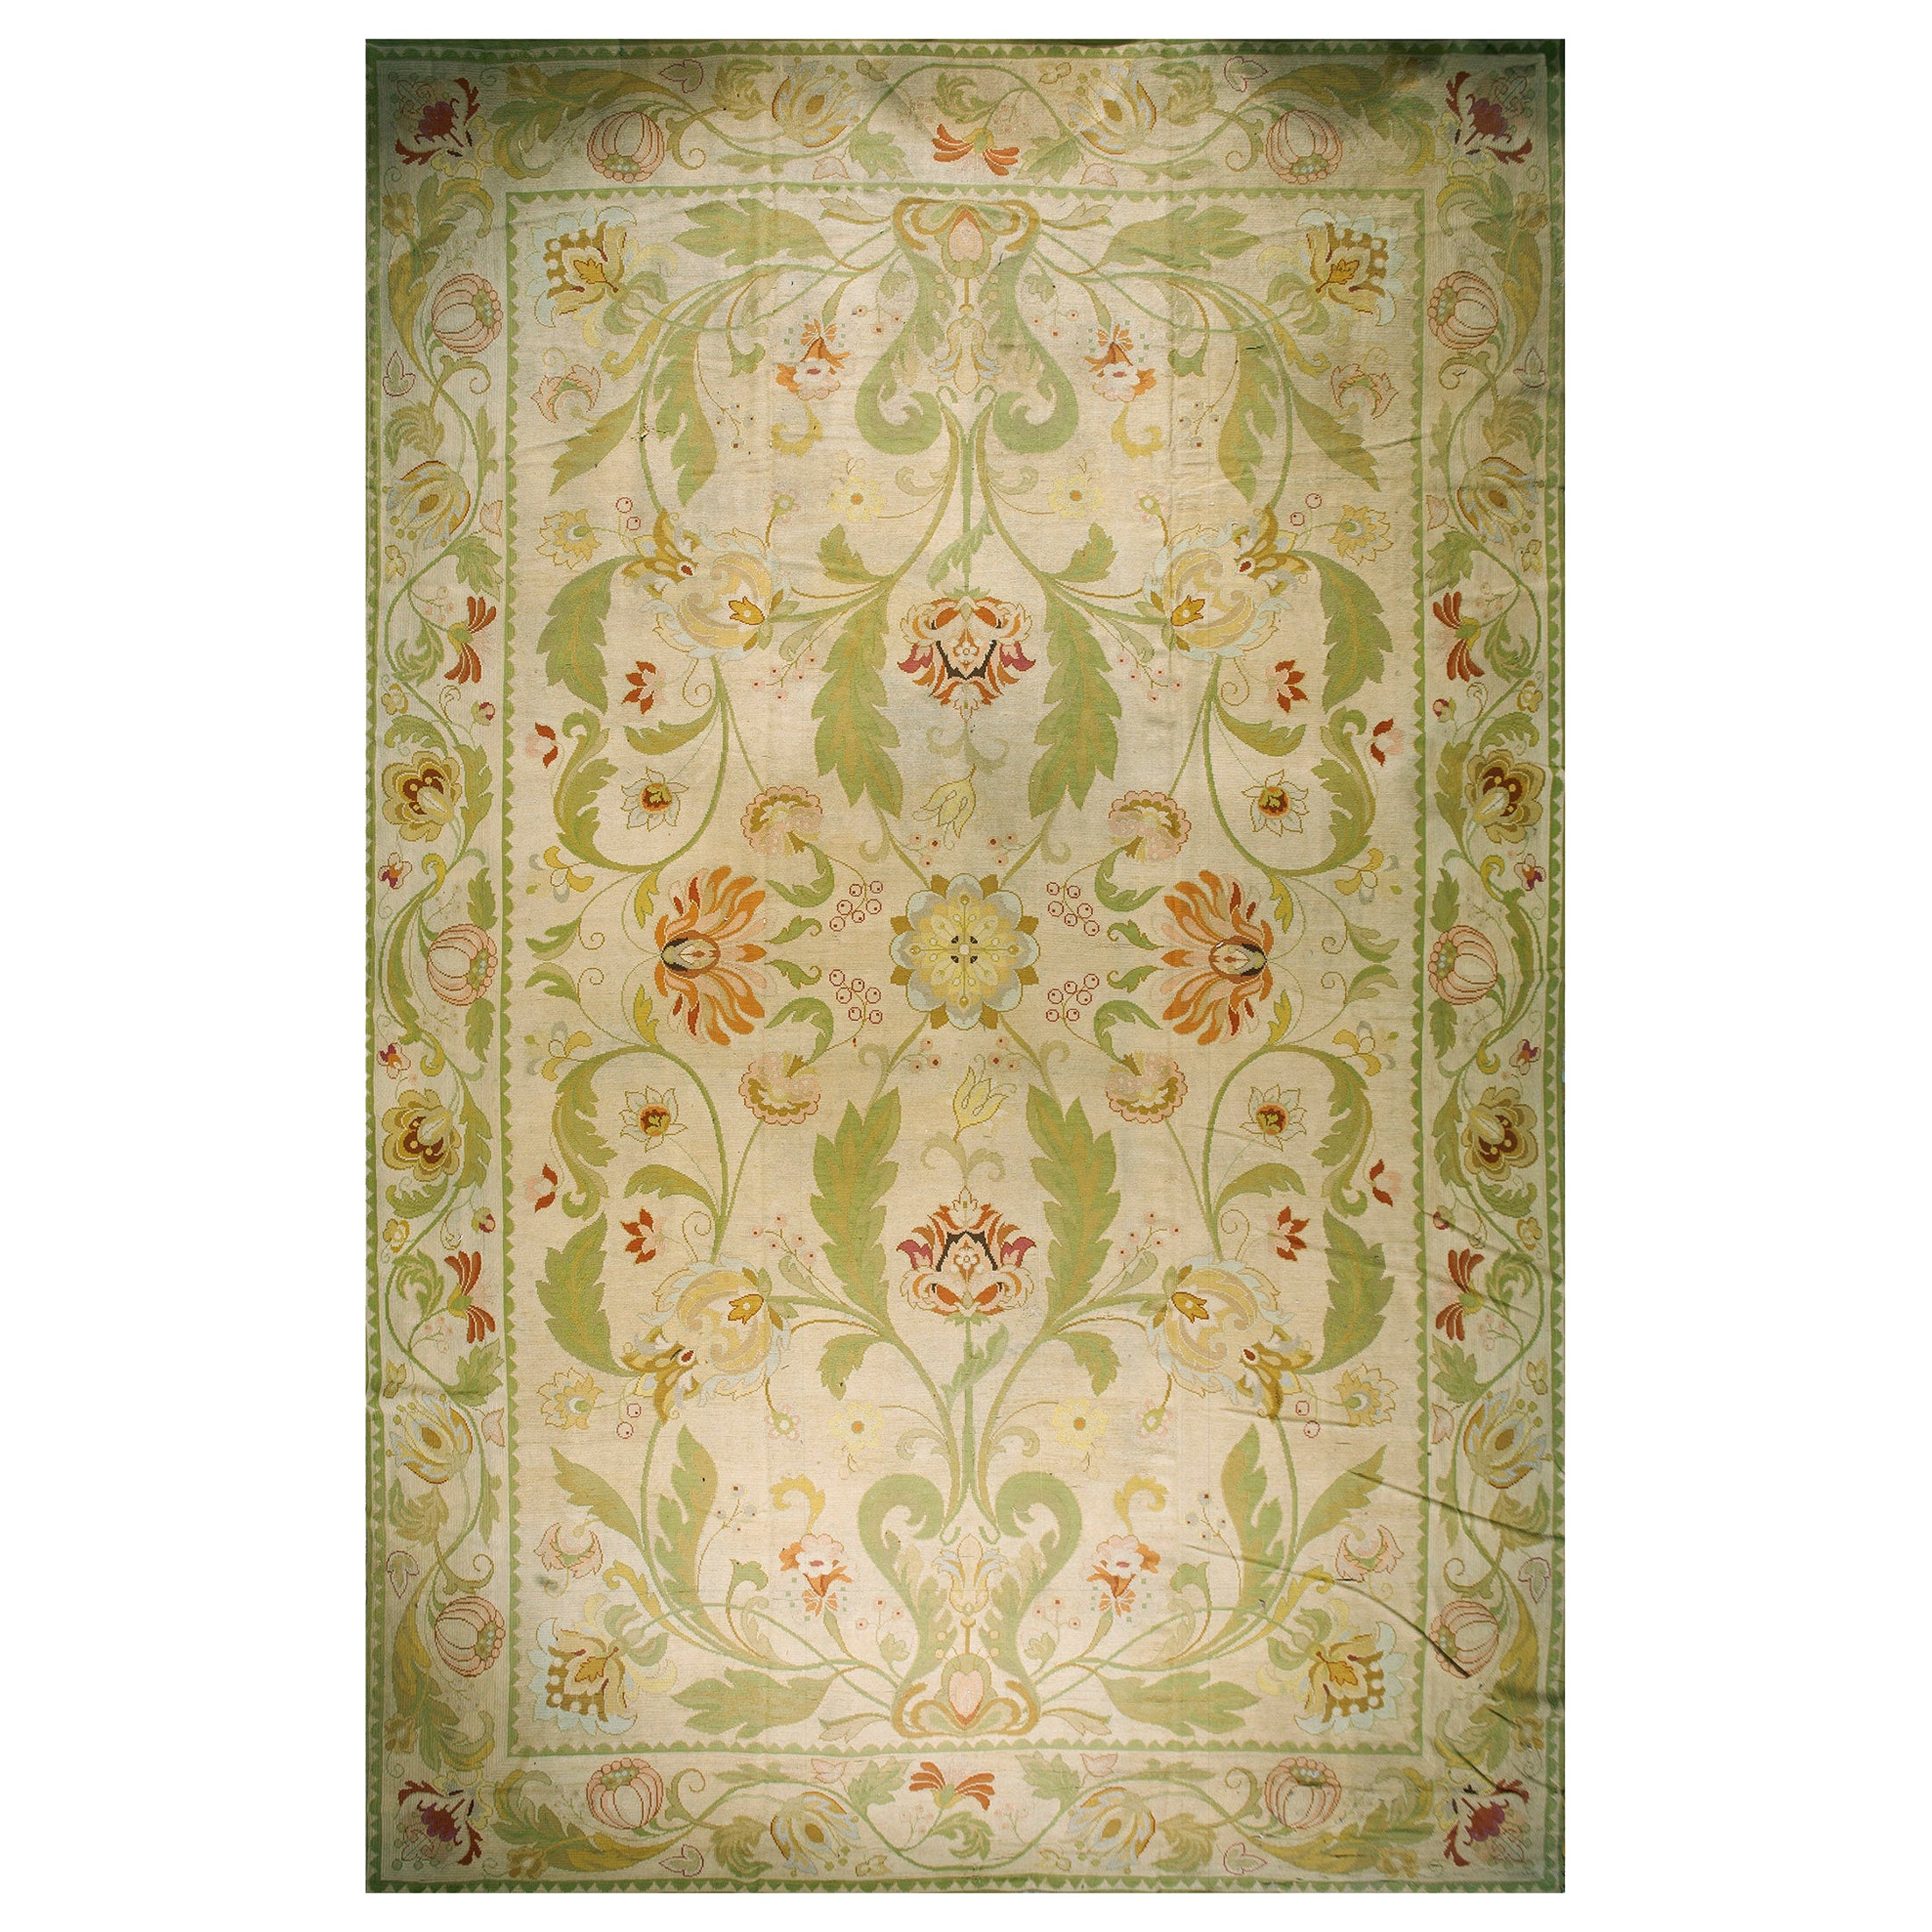 1930s Portuguese Arraiolos Needlepoint Carpet ( 14'2" x 23' - 432 x 702 ) For Sale